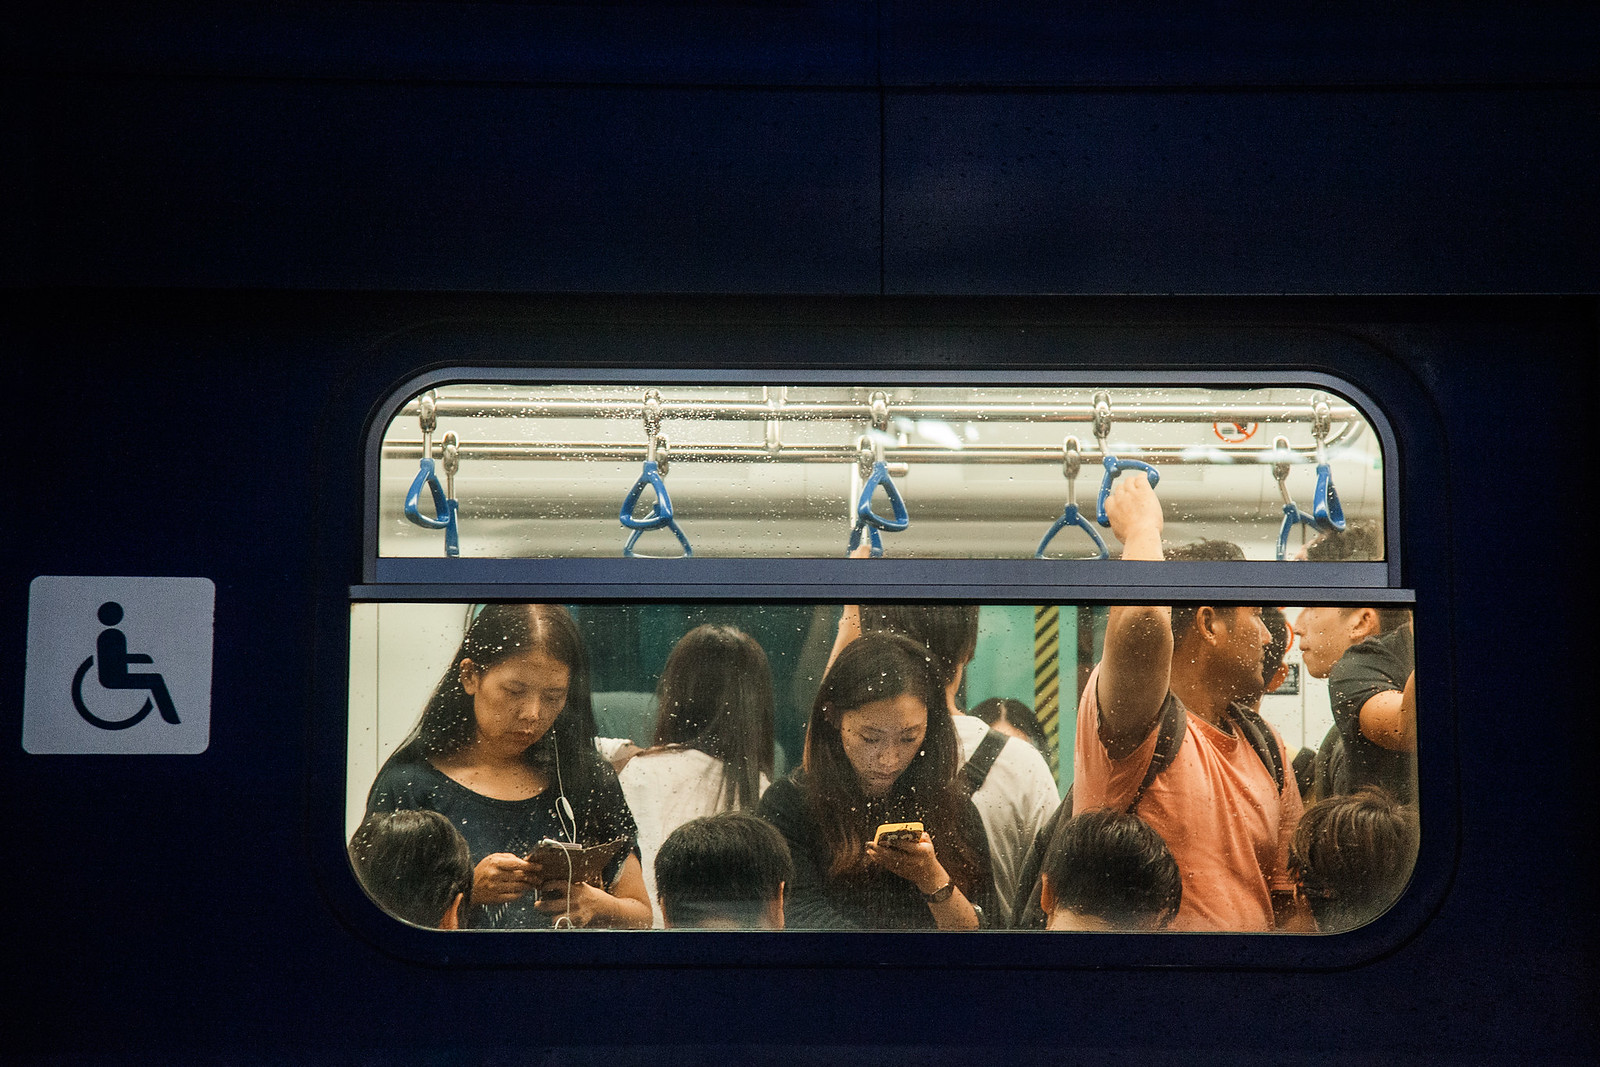 HK commuters